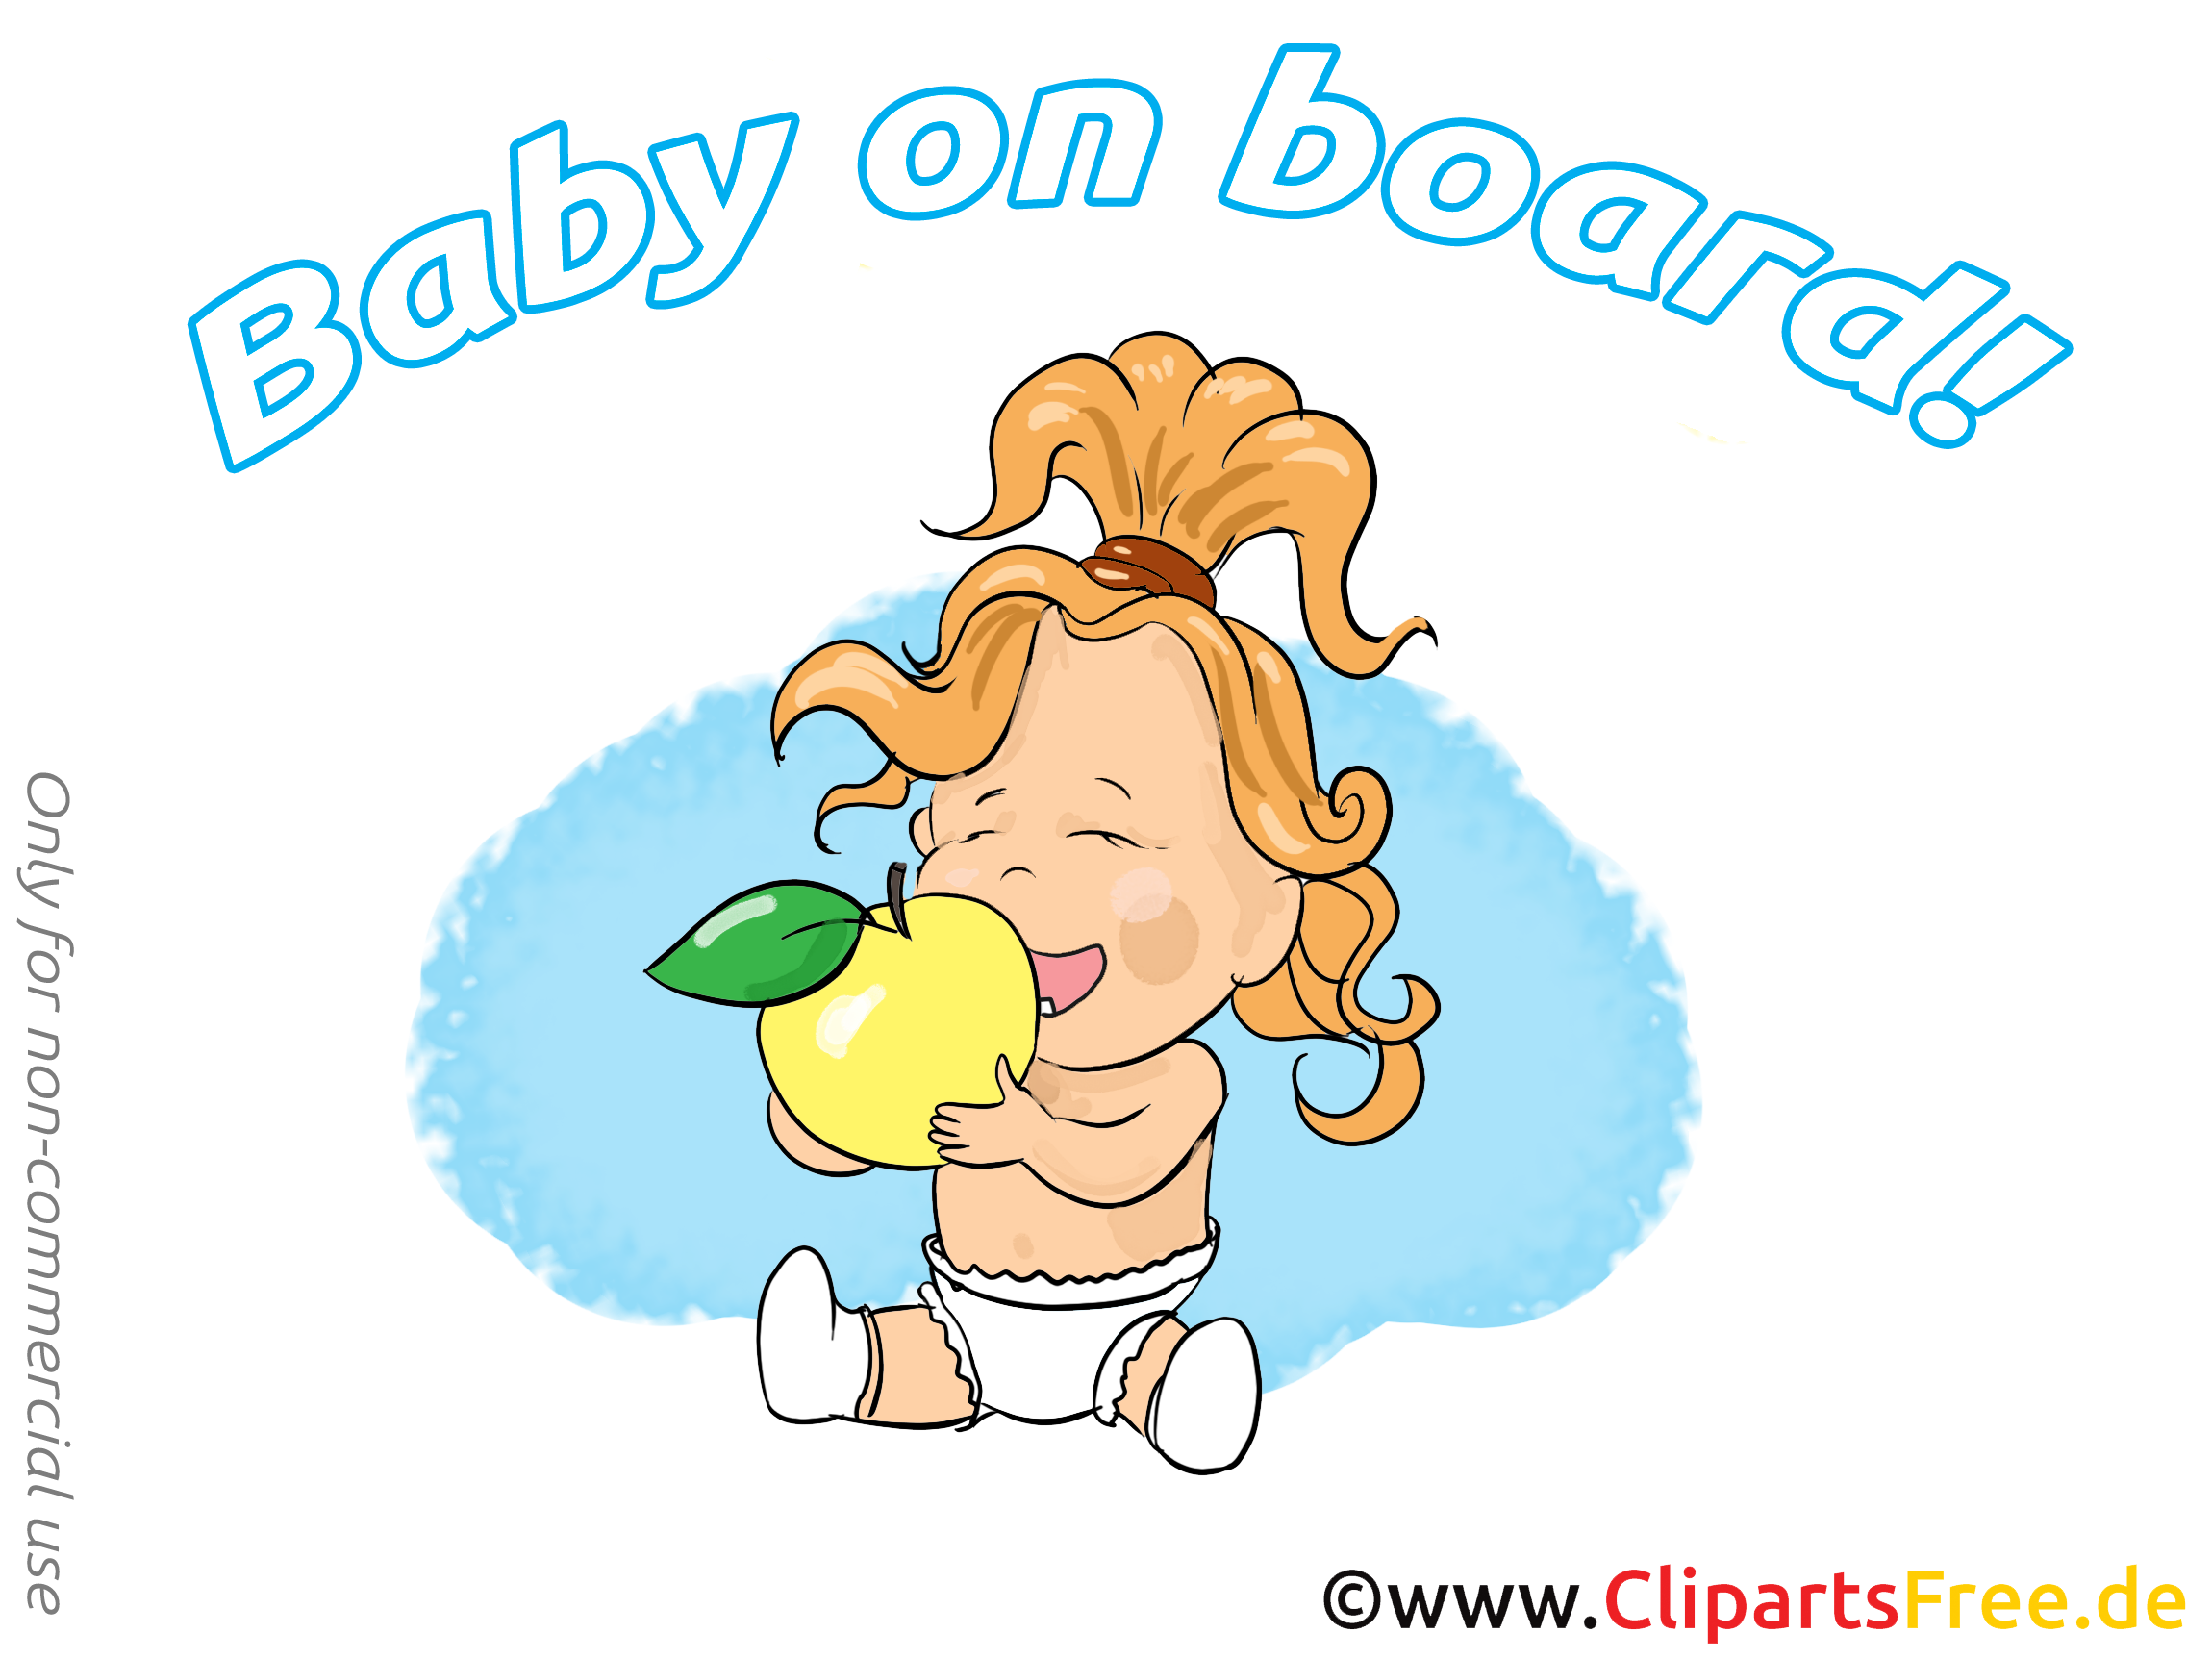 Pomme images gratuites – Bébé à bord clipart